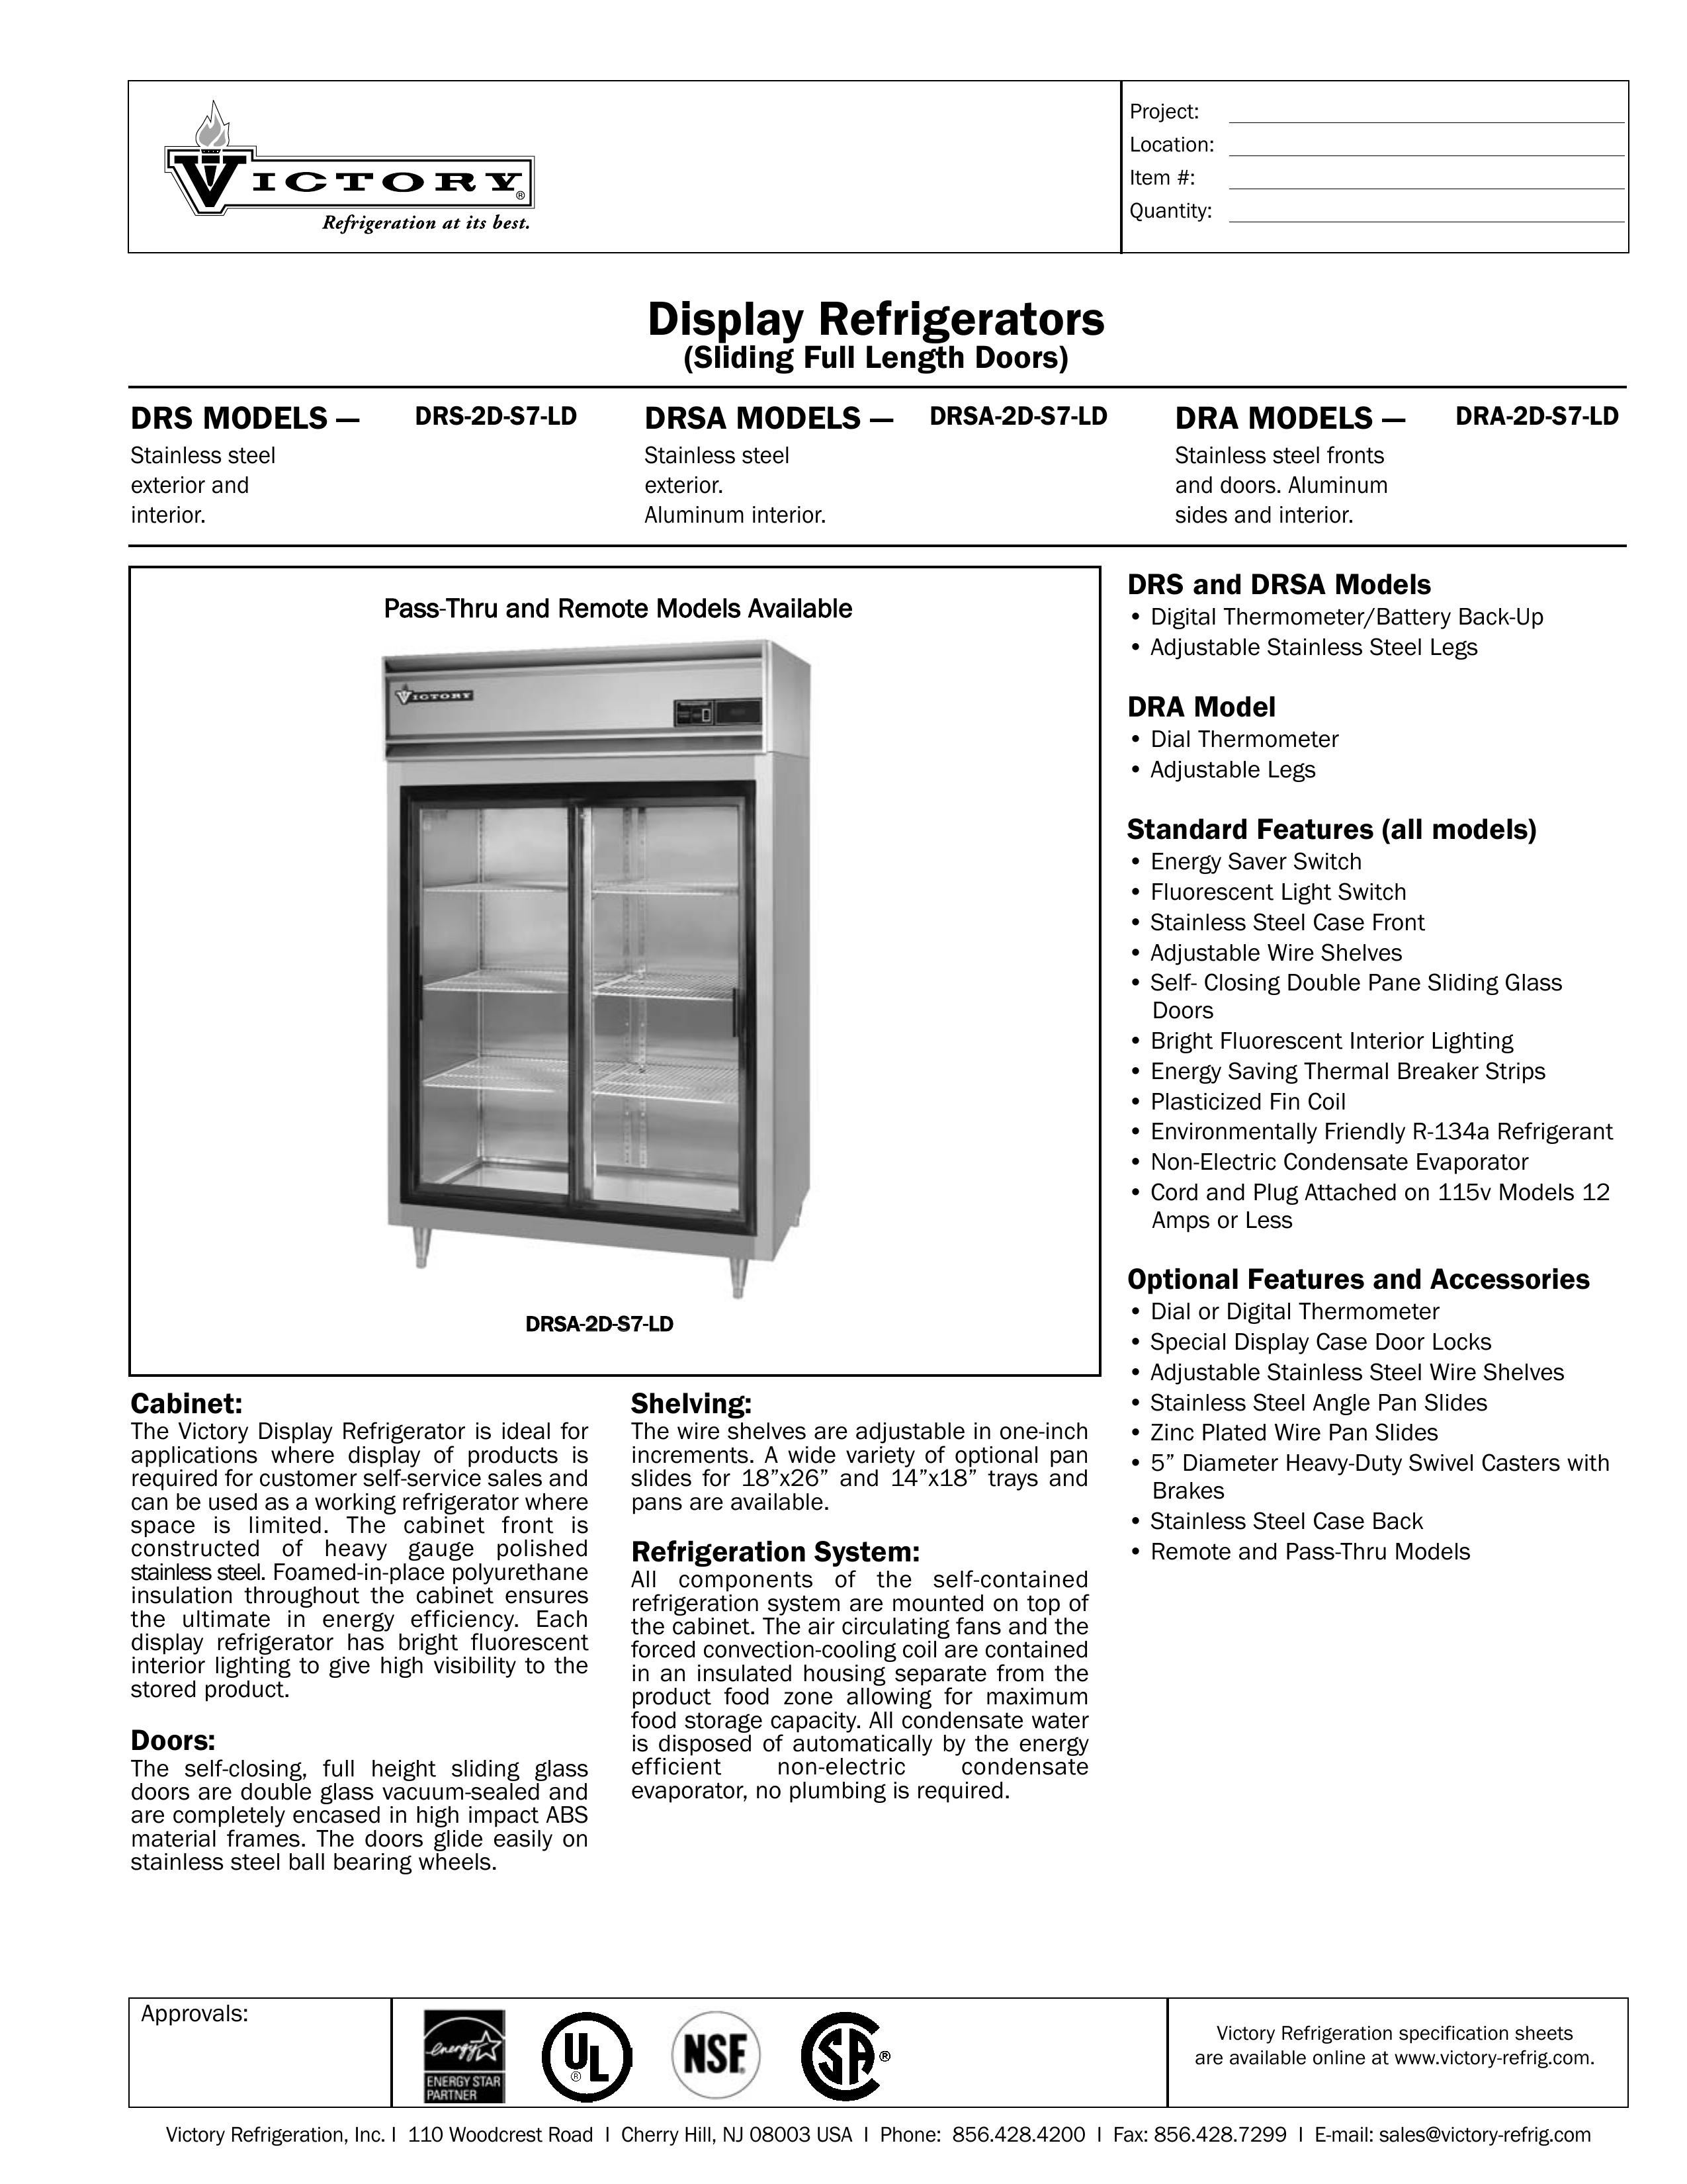 Victory Refrigeration DRA-2D-S7-LD Refrigerator User Manual